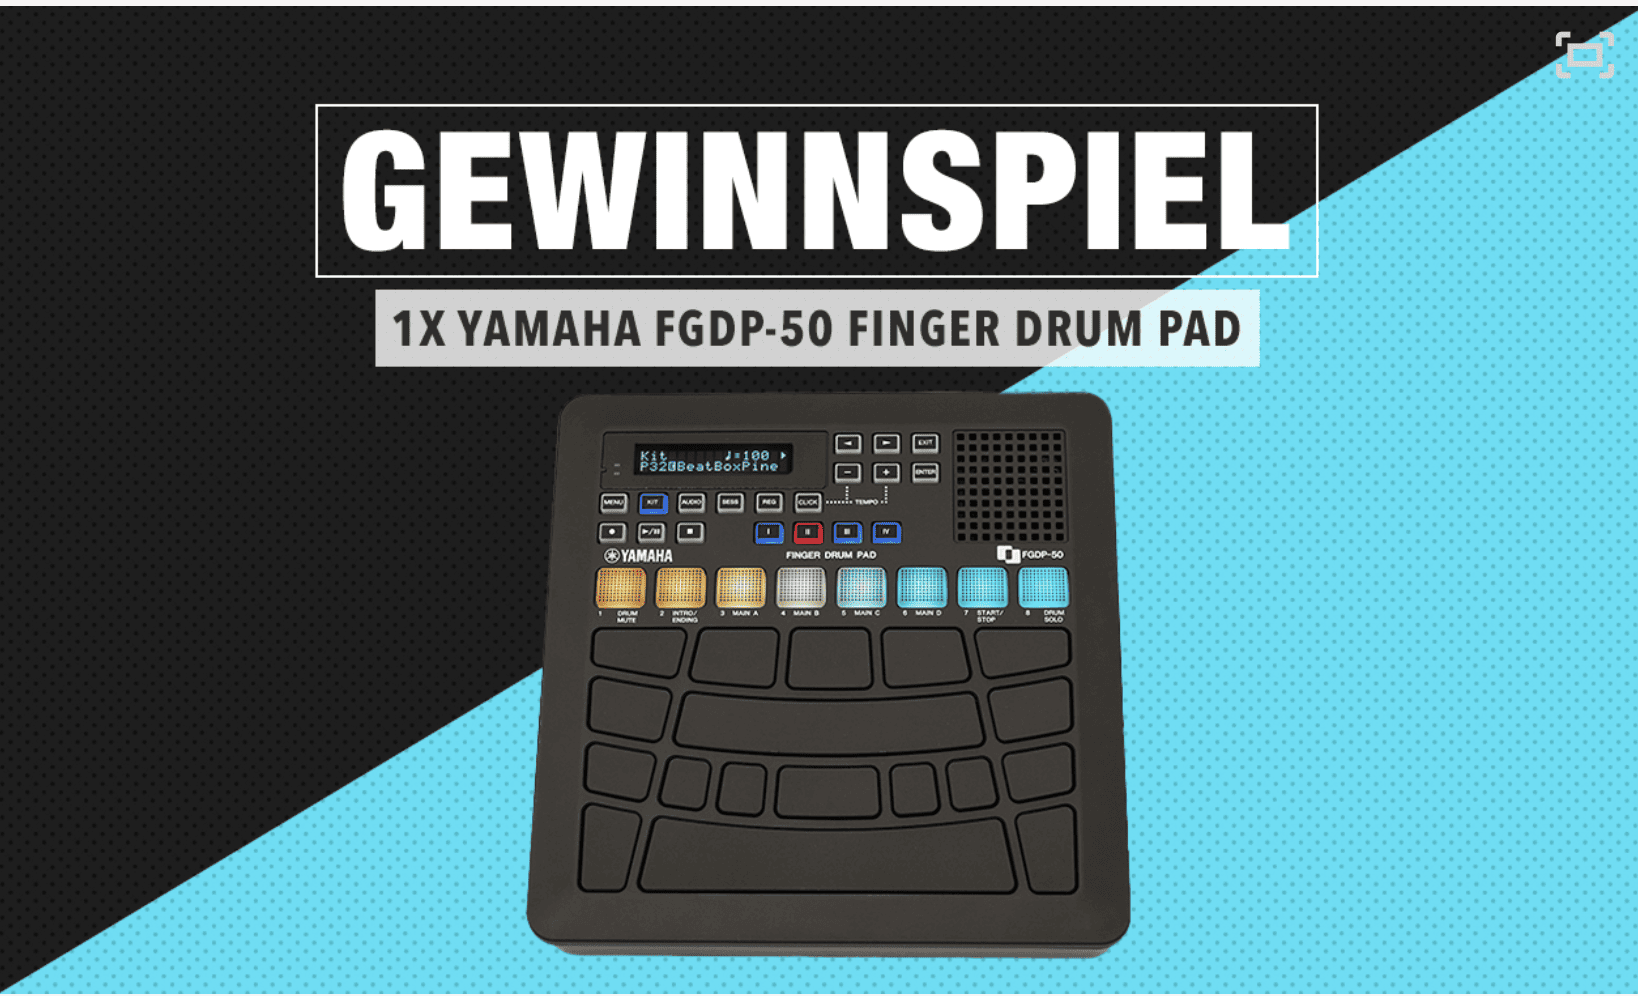 case_bonedo Gewinnspiel Yamaha FGDP-50 Finger Drum Pad